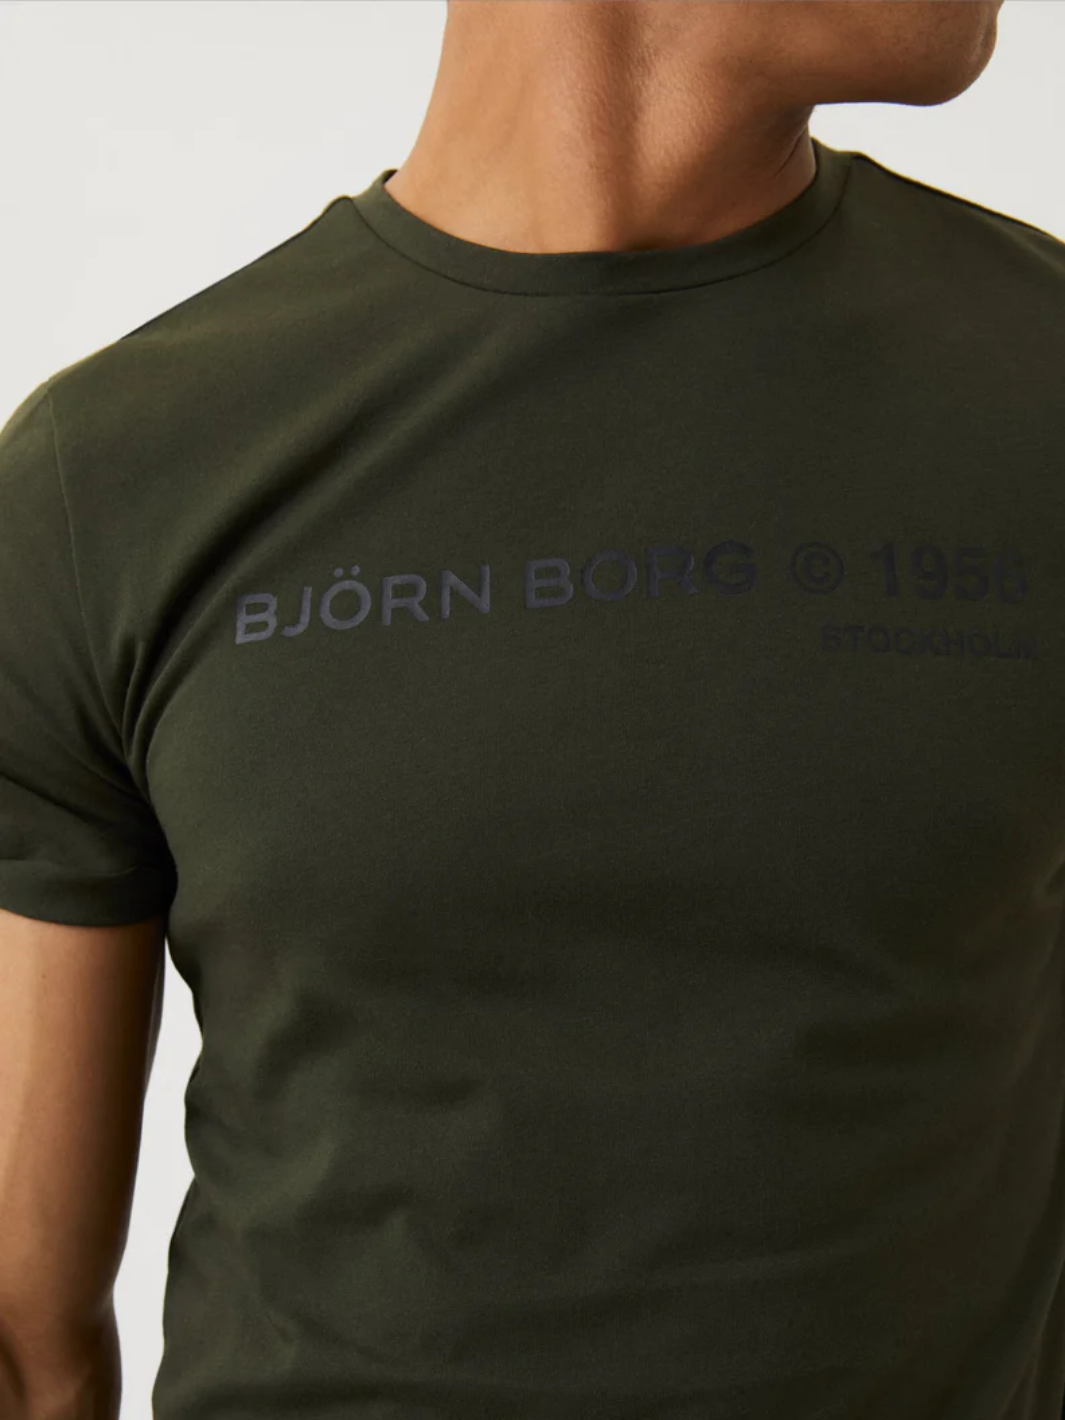 Björn Borg Training T-Shirt